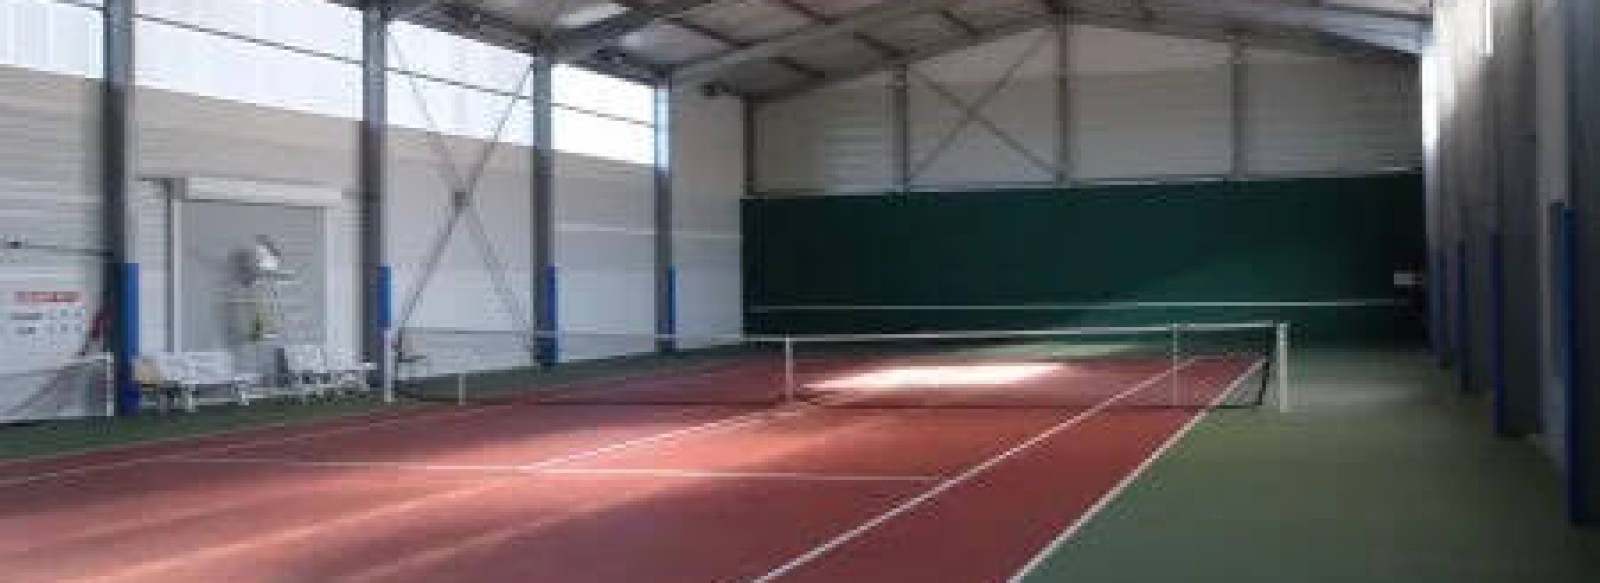 Courts de Tennis interieurs